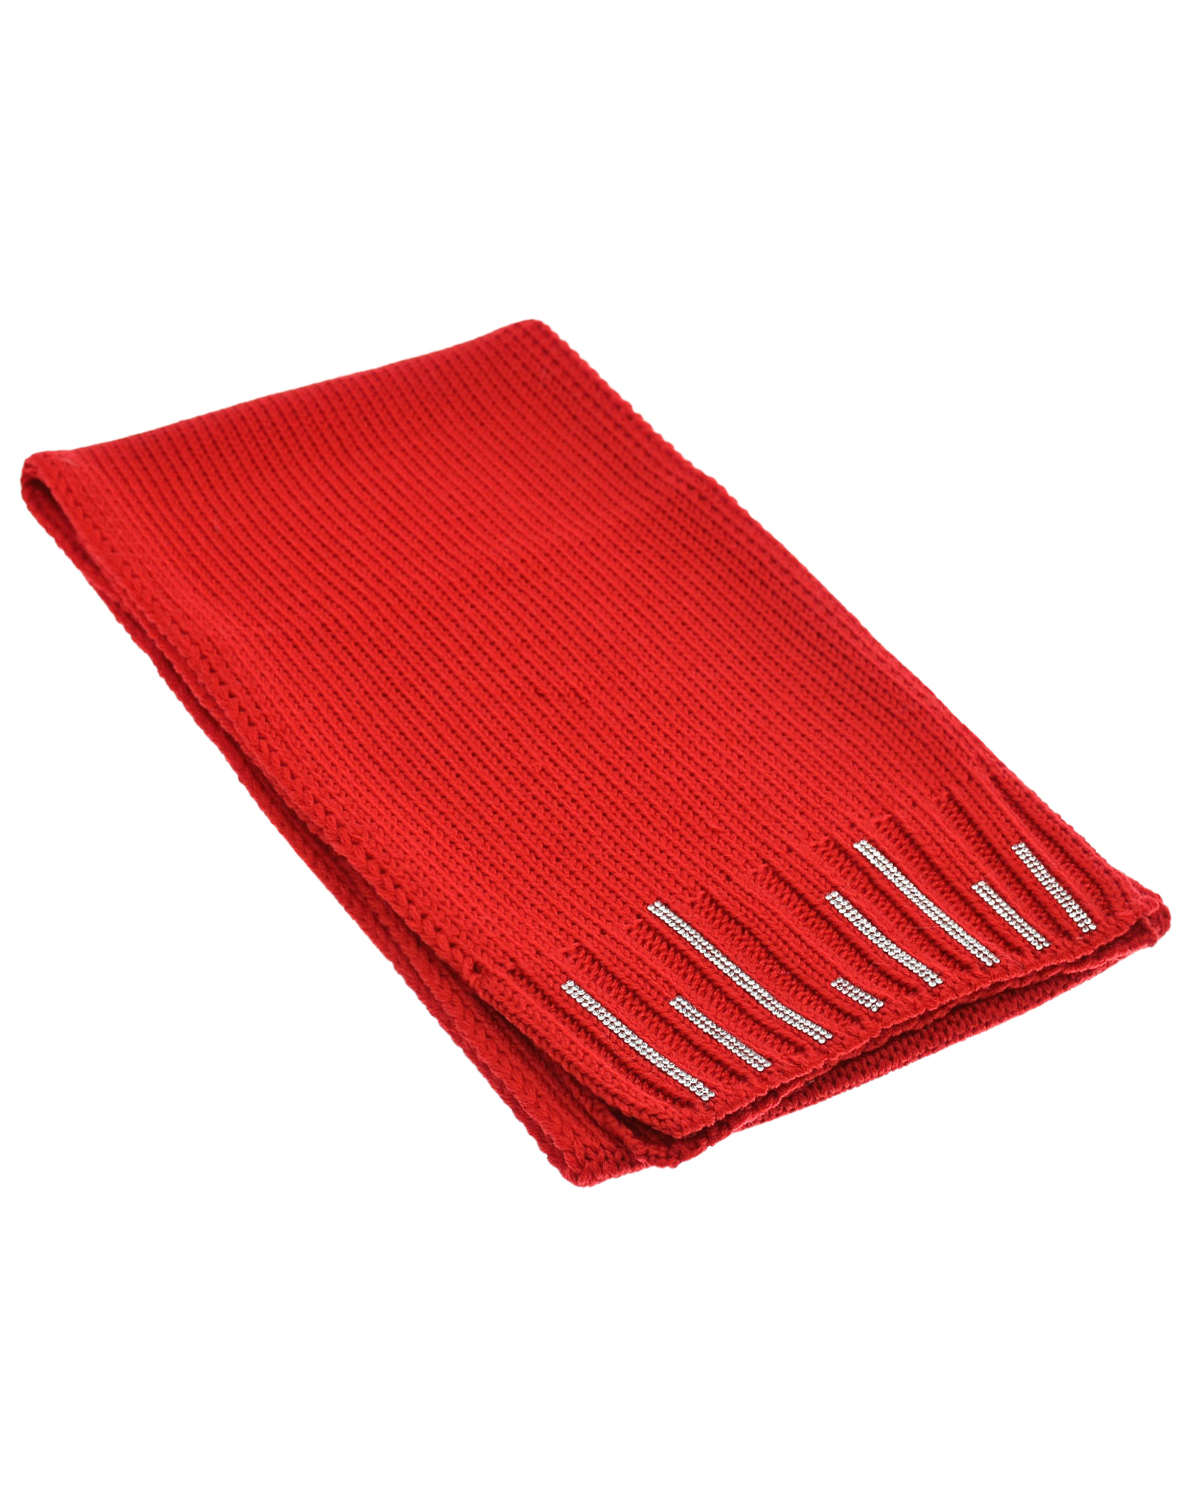 Красный шарф со стразами Joli Bebe детский, размер unica